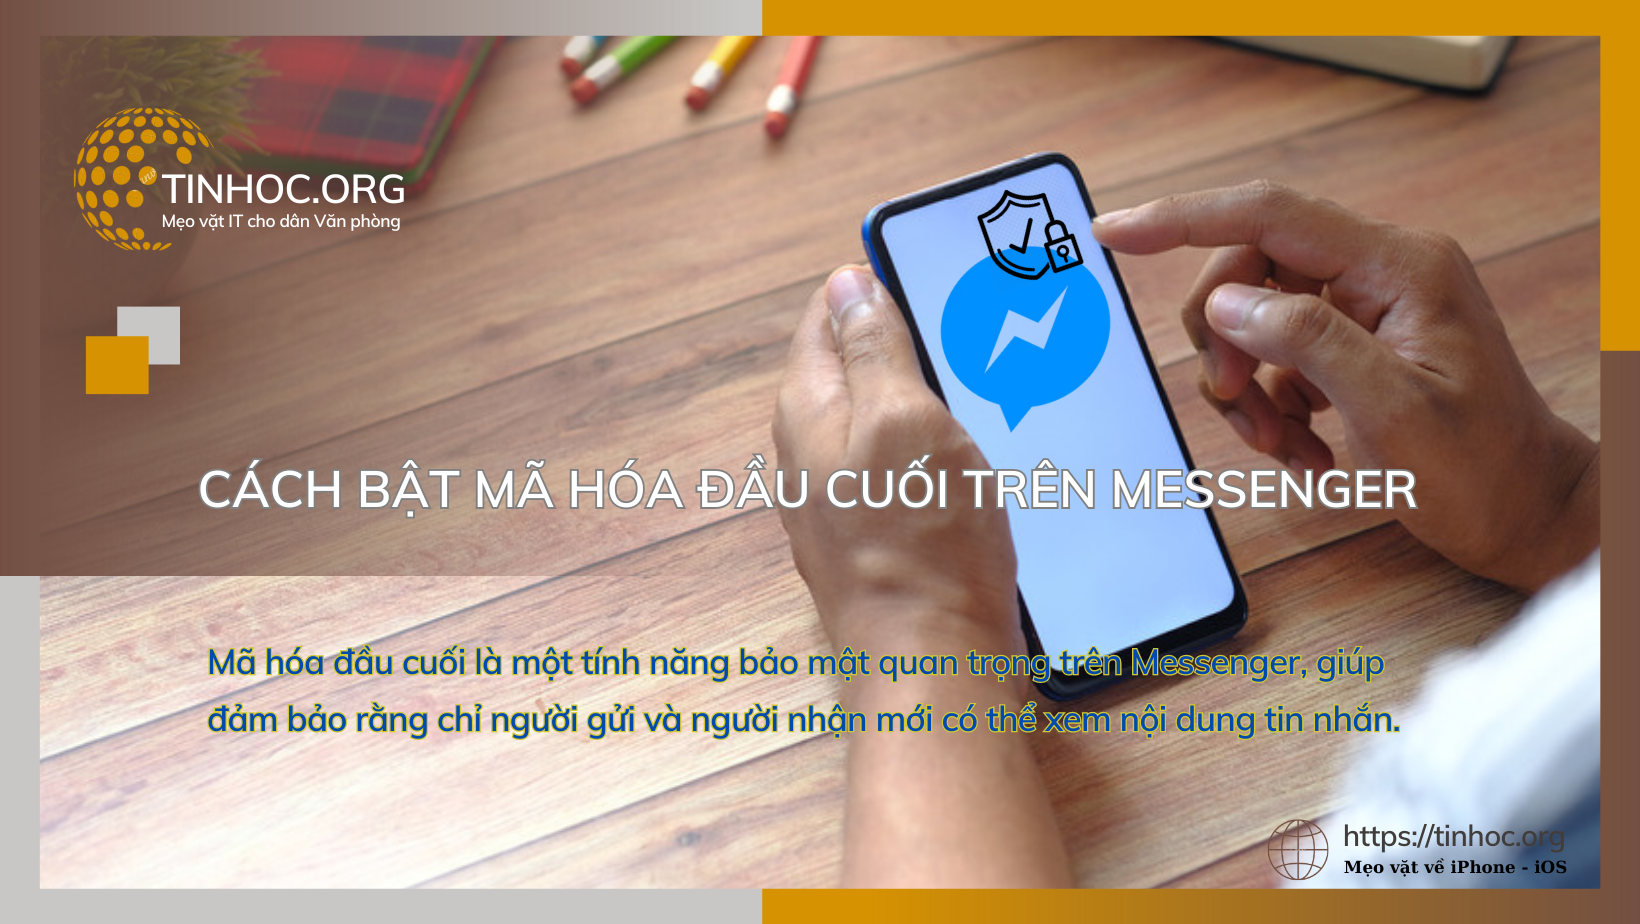 Mã hóa đầu cuối là một tính năng bảo mật quan trọng trên Messenger, giúp đảm bảo rằng chỉ người gửi và người nhận mới có thể xem nội dung tin nhắn.